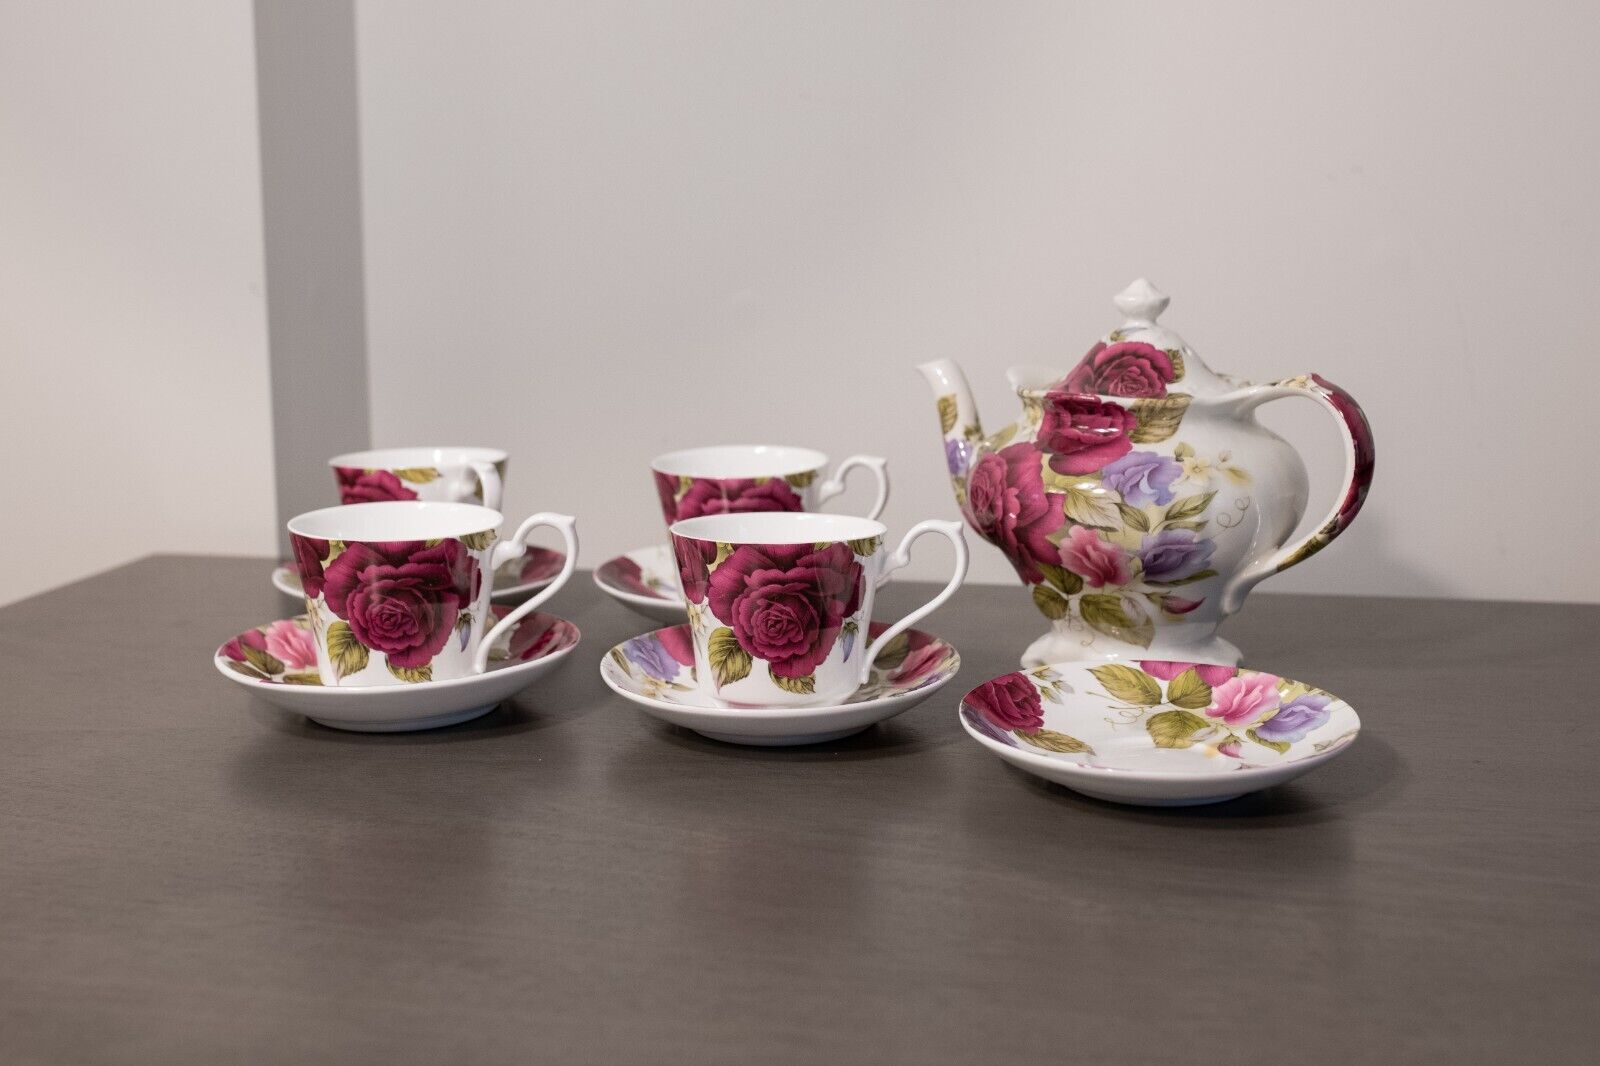 Vintage Sadler Earthenware Floral Pottery Tea Set Made for Victoria's Secret